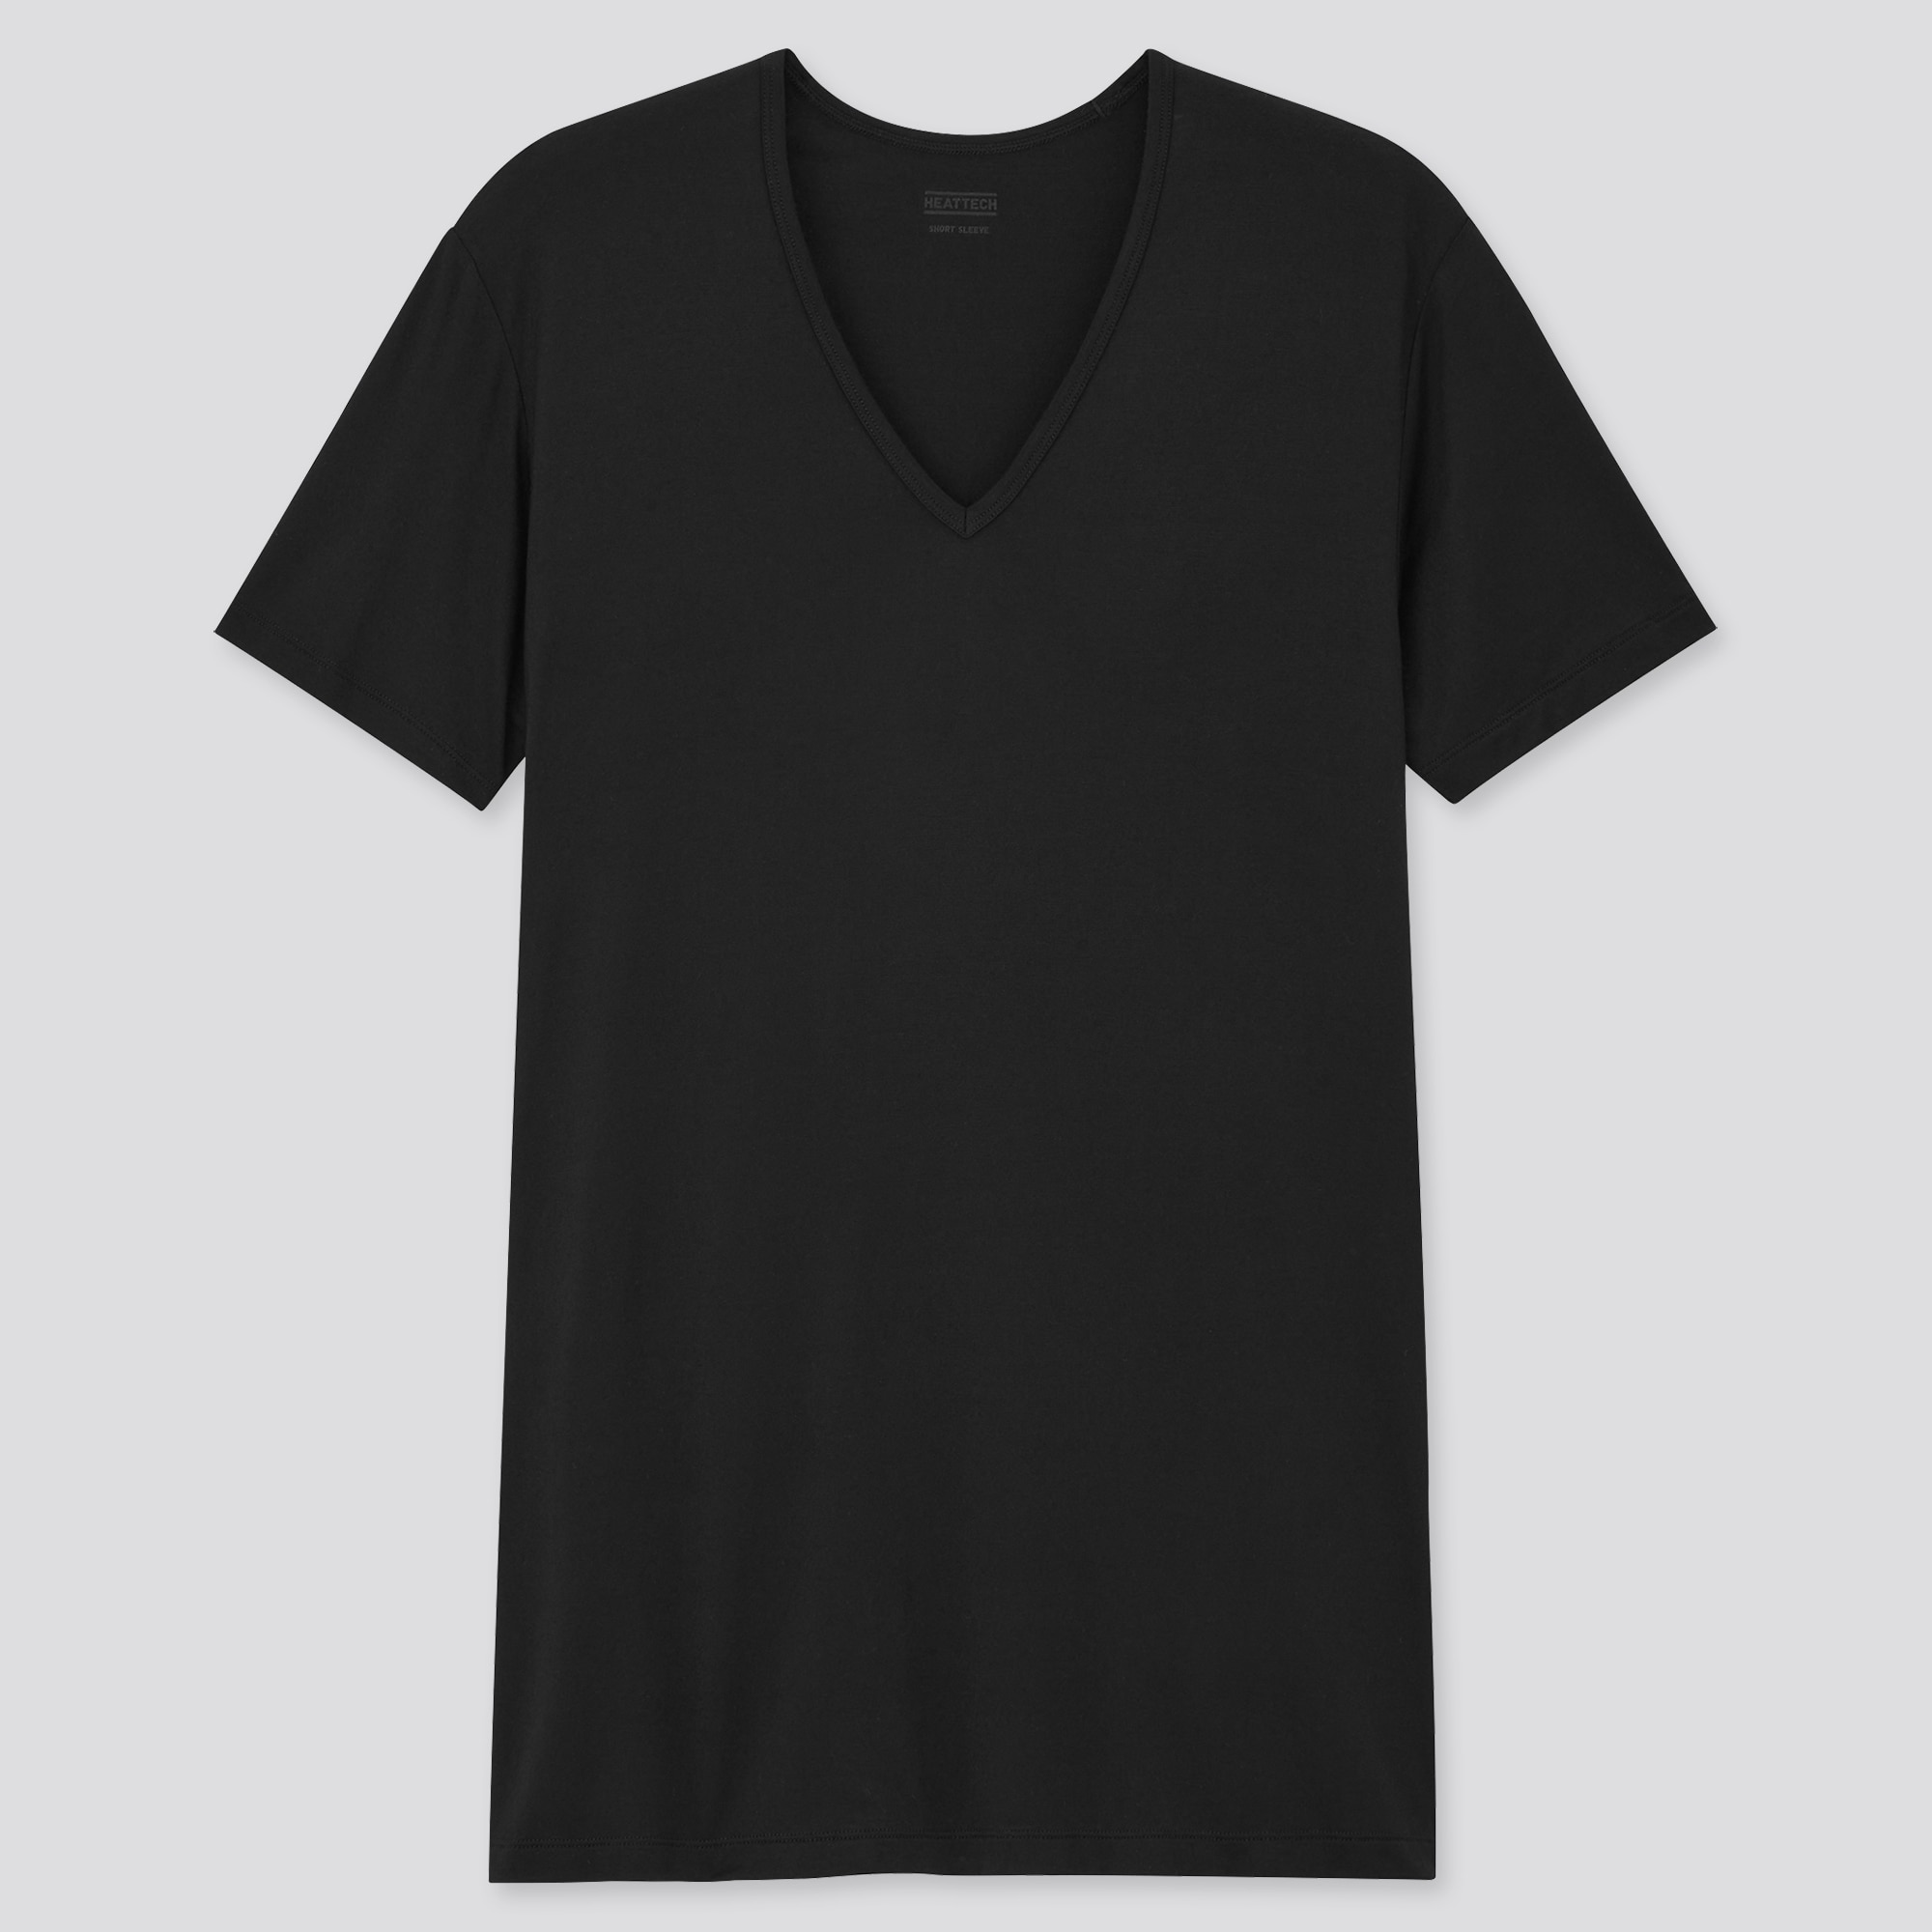 透けたらng メンズのインナーシャツの正解は オススメ人気ブランド４選 メンズファッションの悩みを解決するメディア 紳士のシャツ